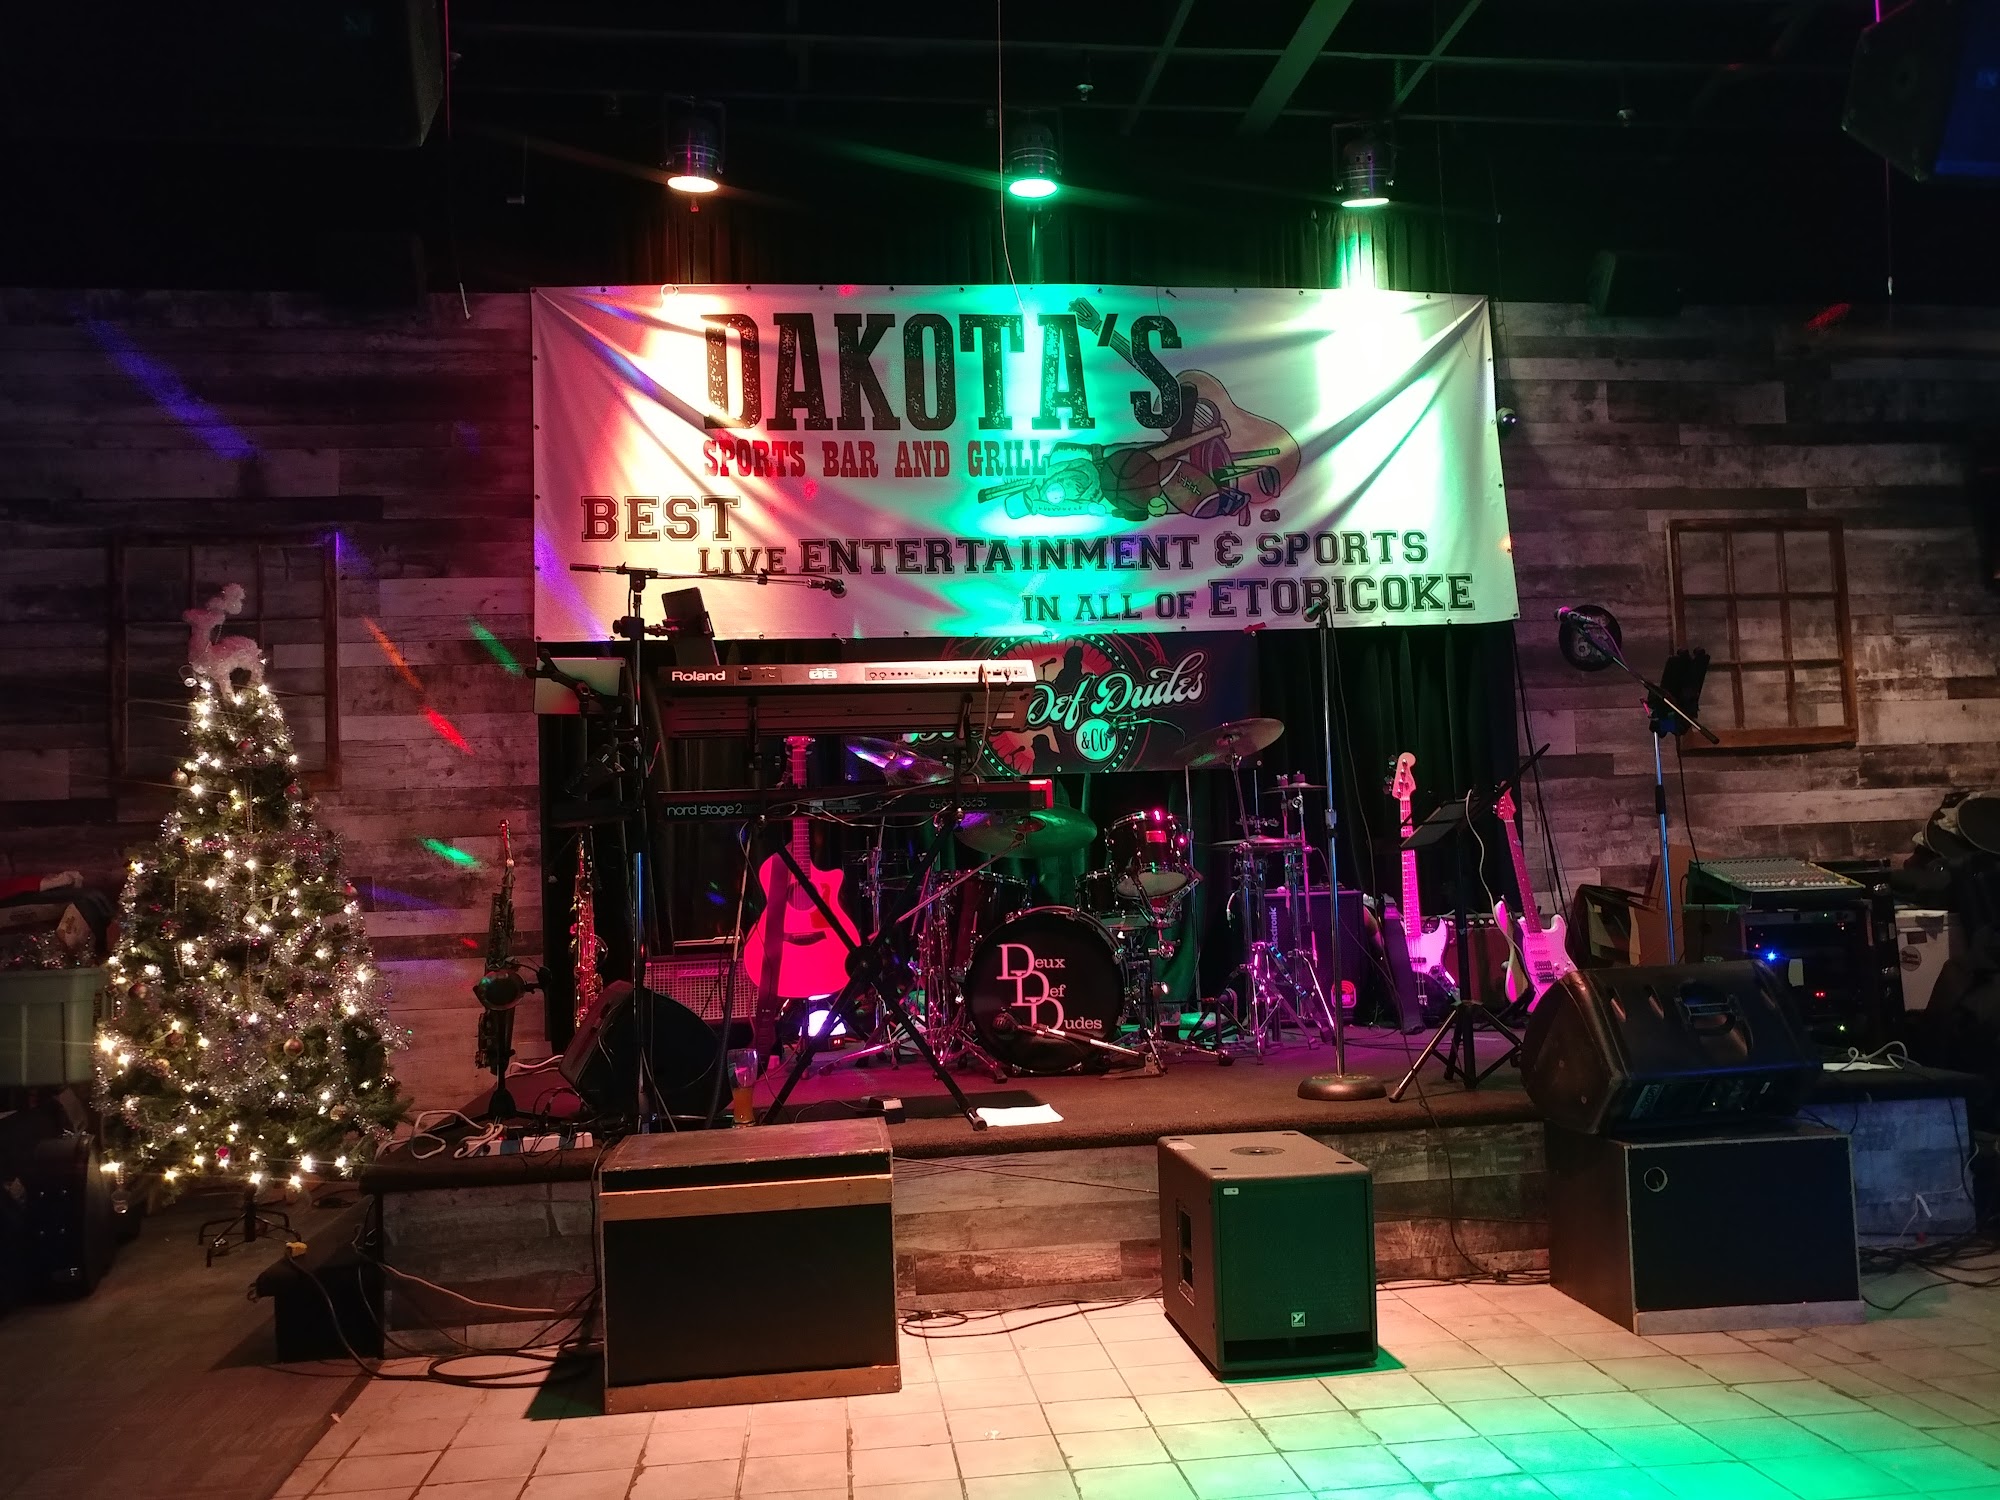 Dakotas Sports Bar & Grill